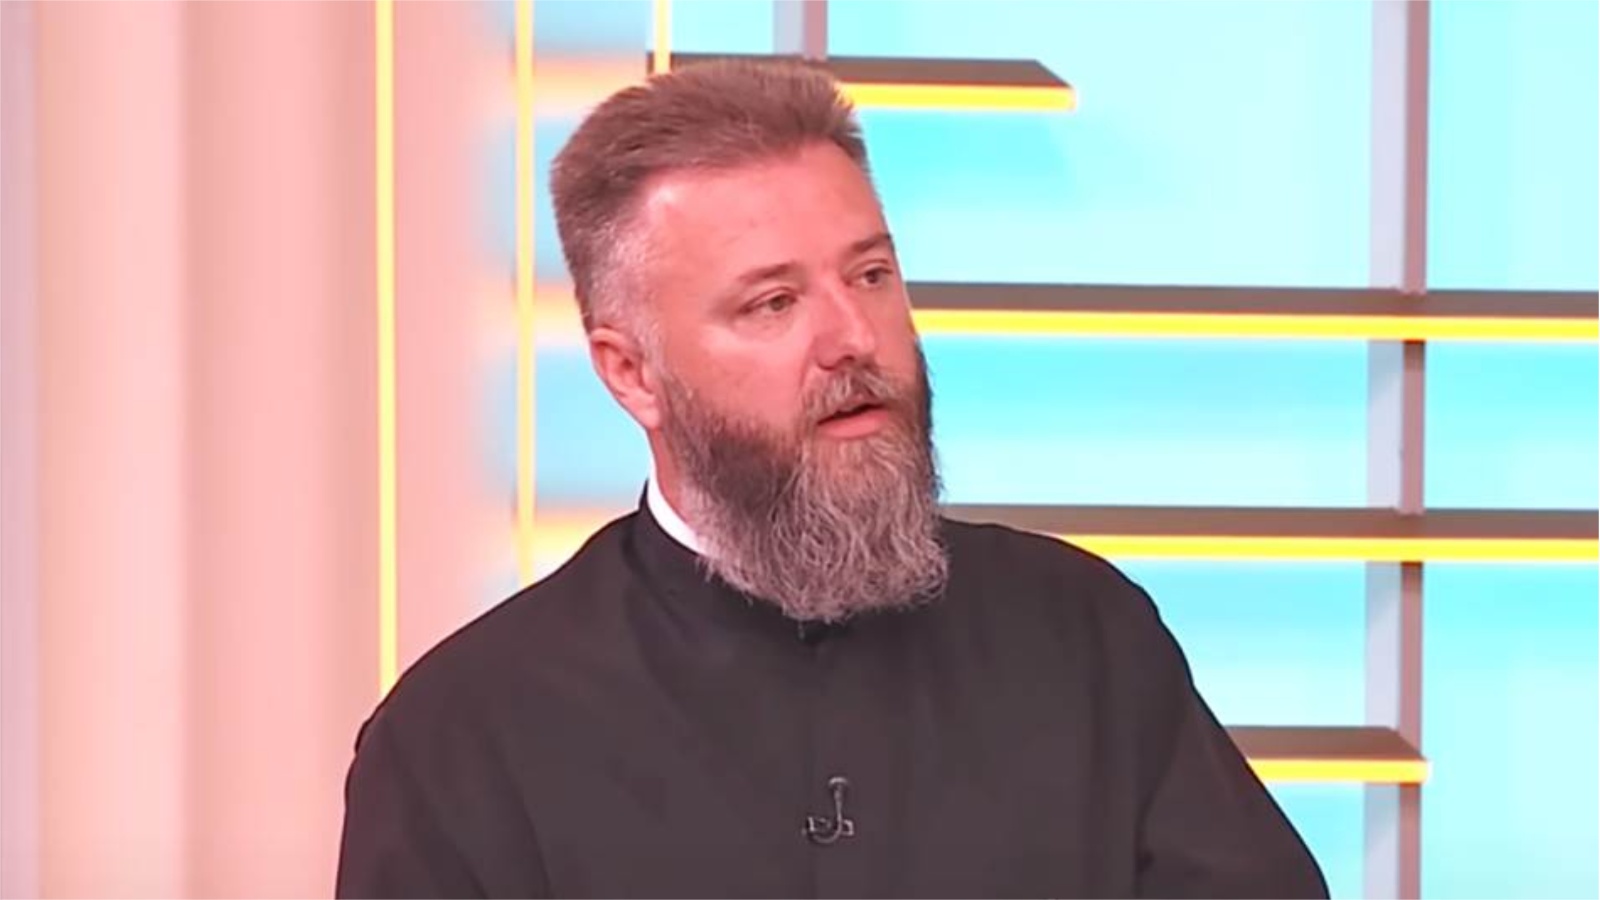 Pravoslavni svećenik objasnio što se događa kada tata ne obraća pažnju na dijete